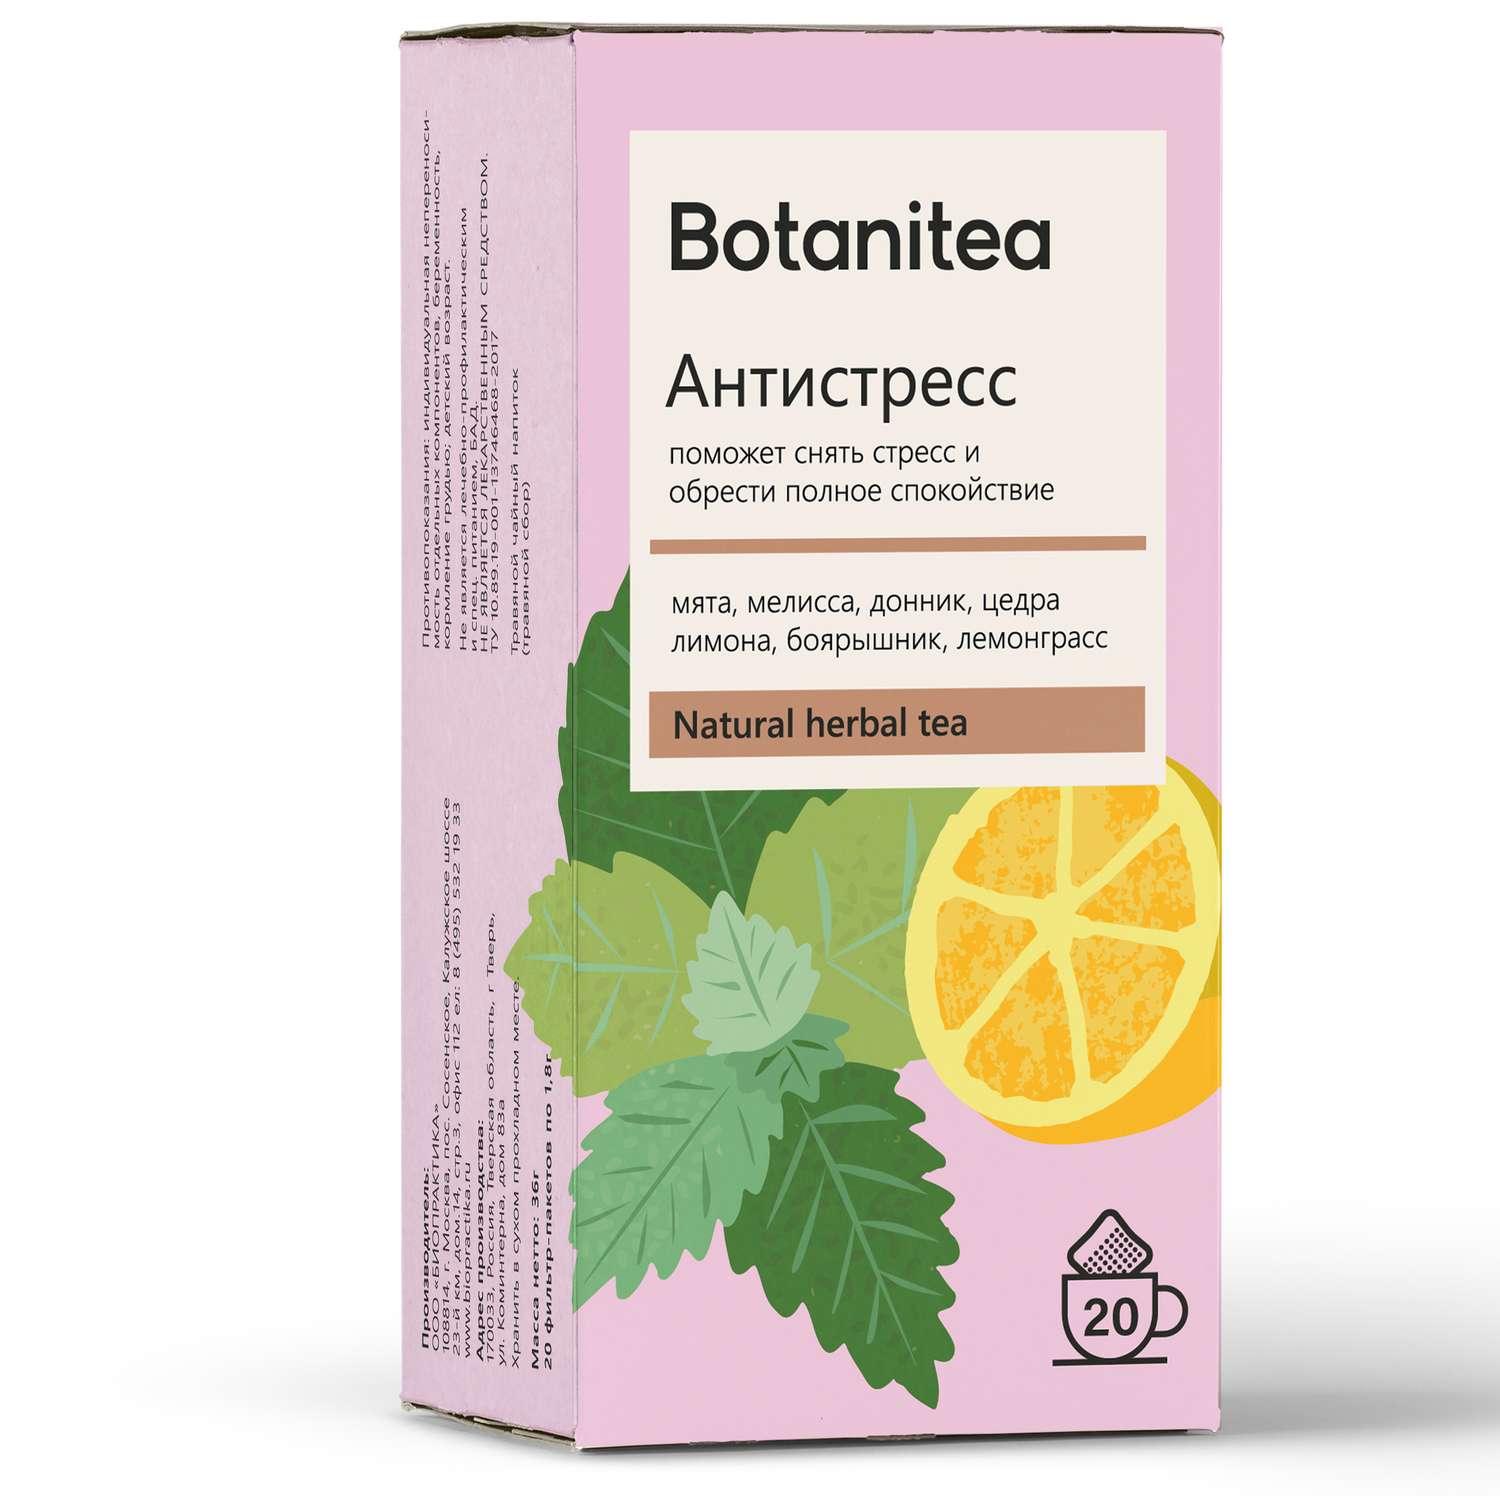 Botanitea. Biopractika чай. Botanitea крепкий сон. , Слабогазированный botanitea «Antistress». Инструкция травяного чая в пакетиках "botanitea" Иммунити.